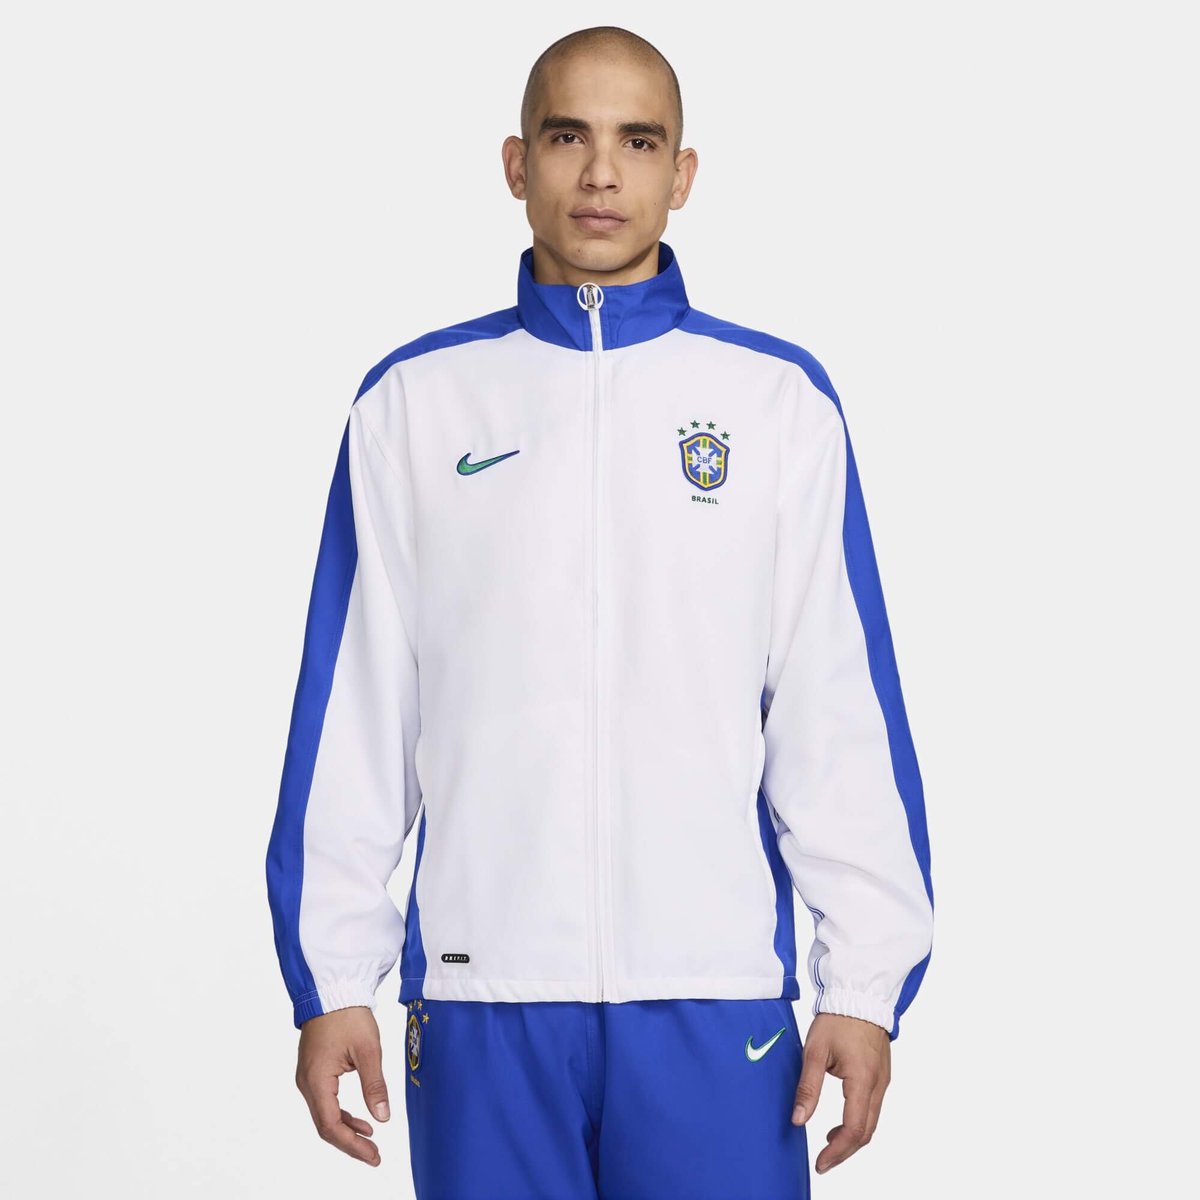 A Nike irá relançar no Brasil a icônica jaqueta usada por Zagallo em 1998, na França.